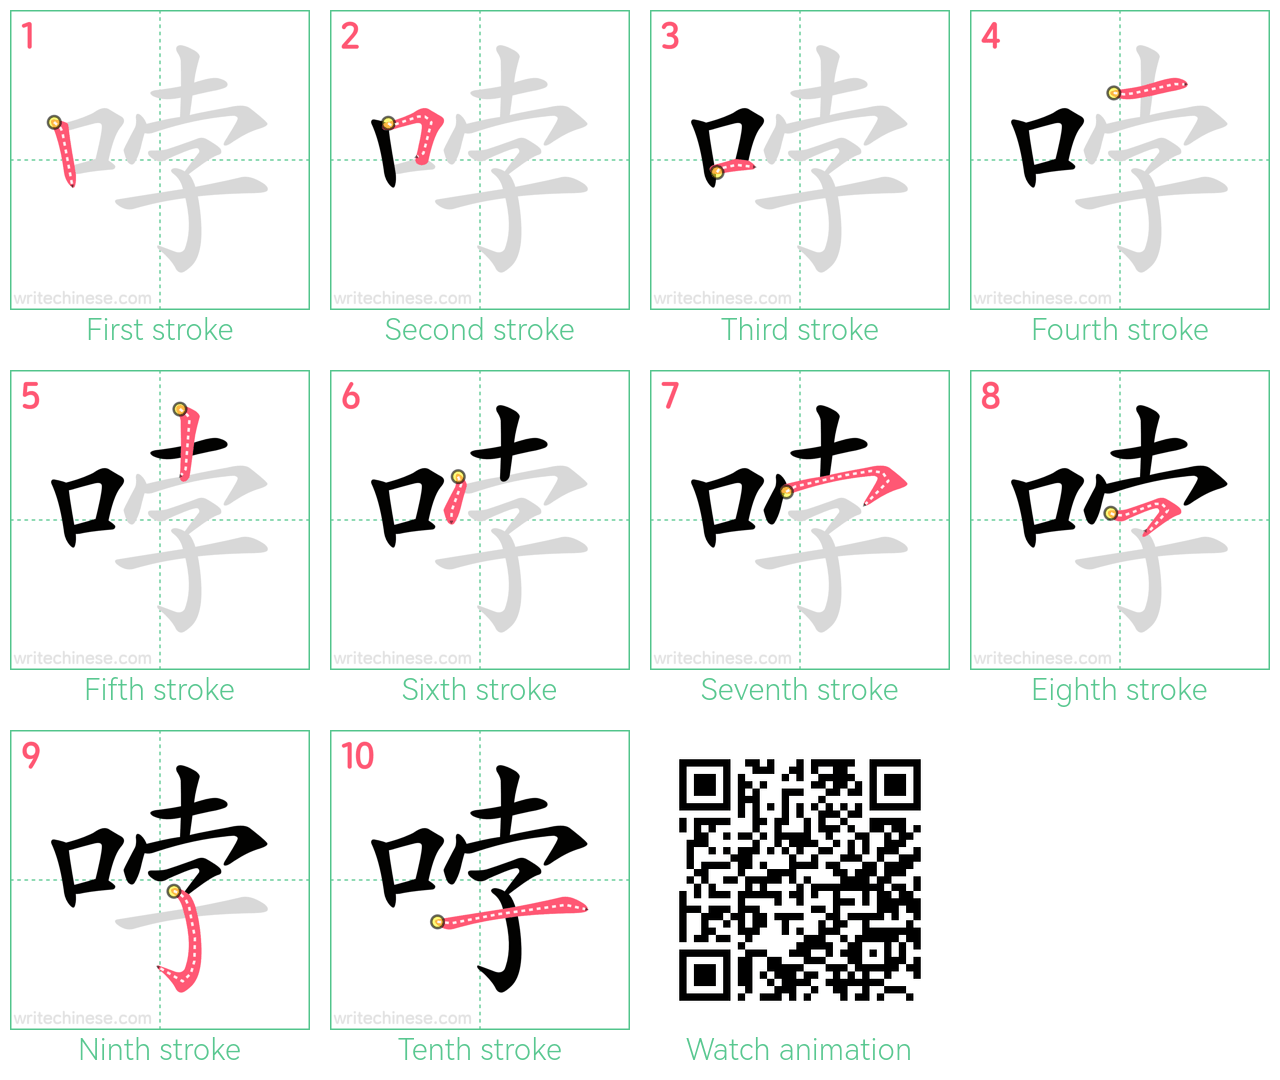 哱 step-by-step stroke order diagrams